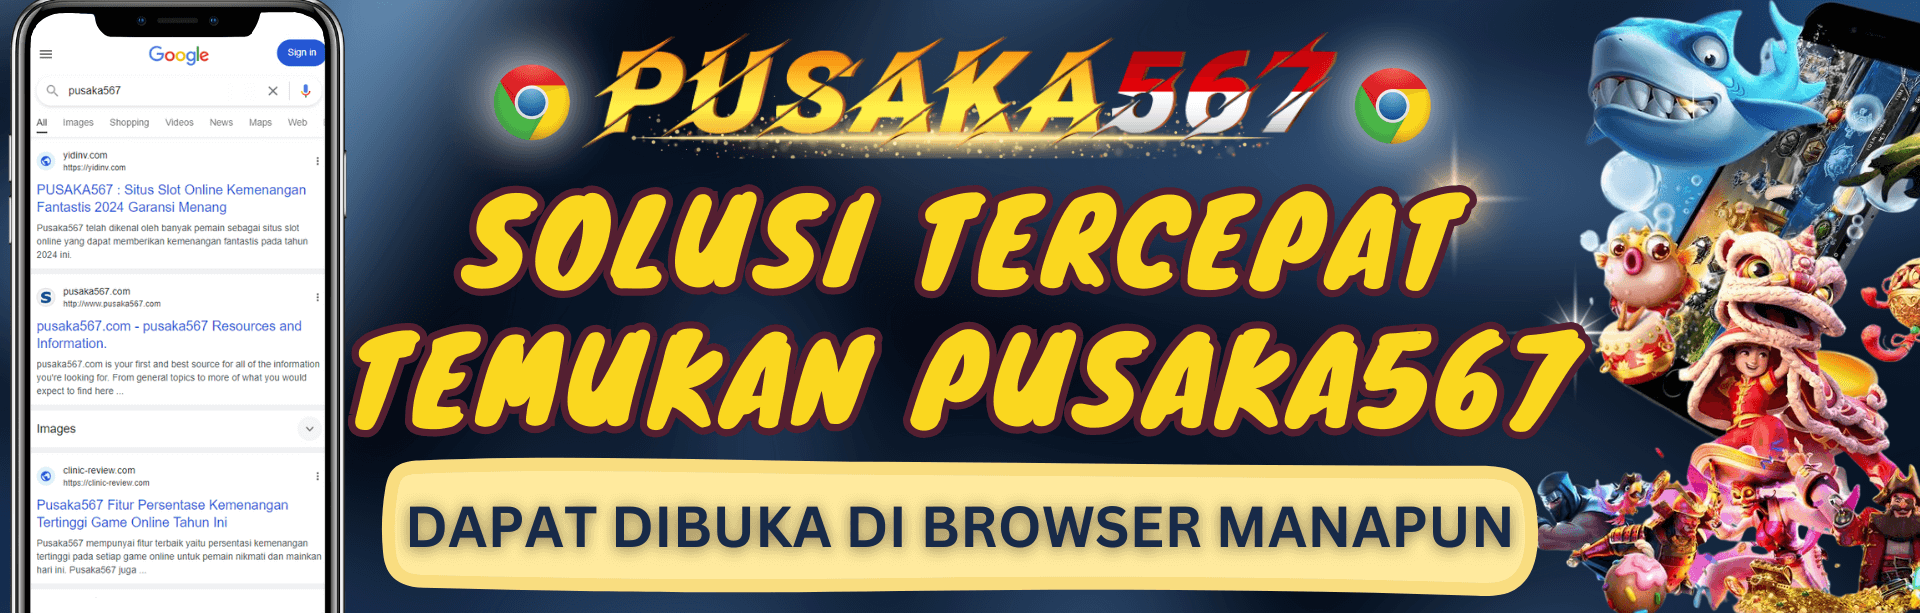 Google Pusaka567